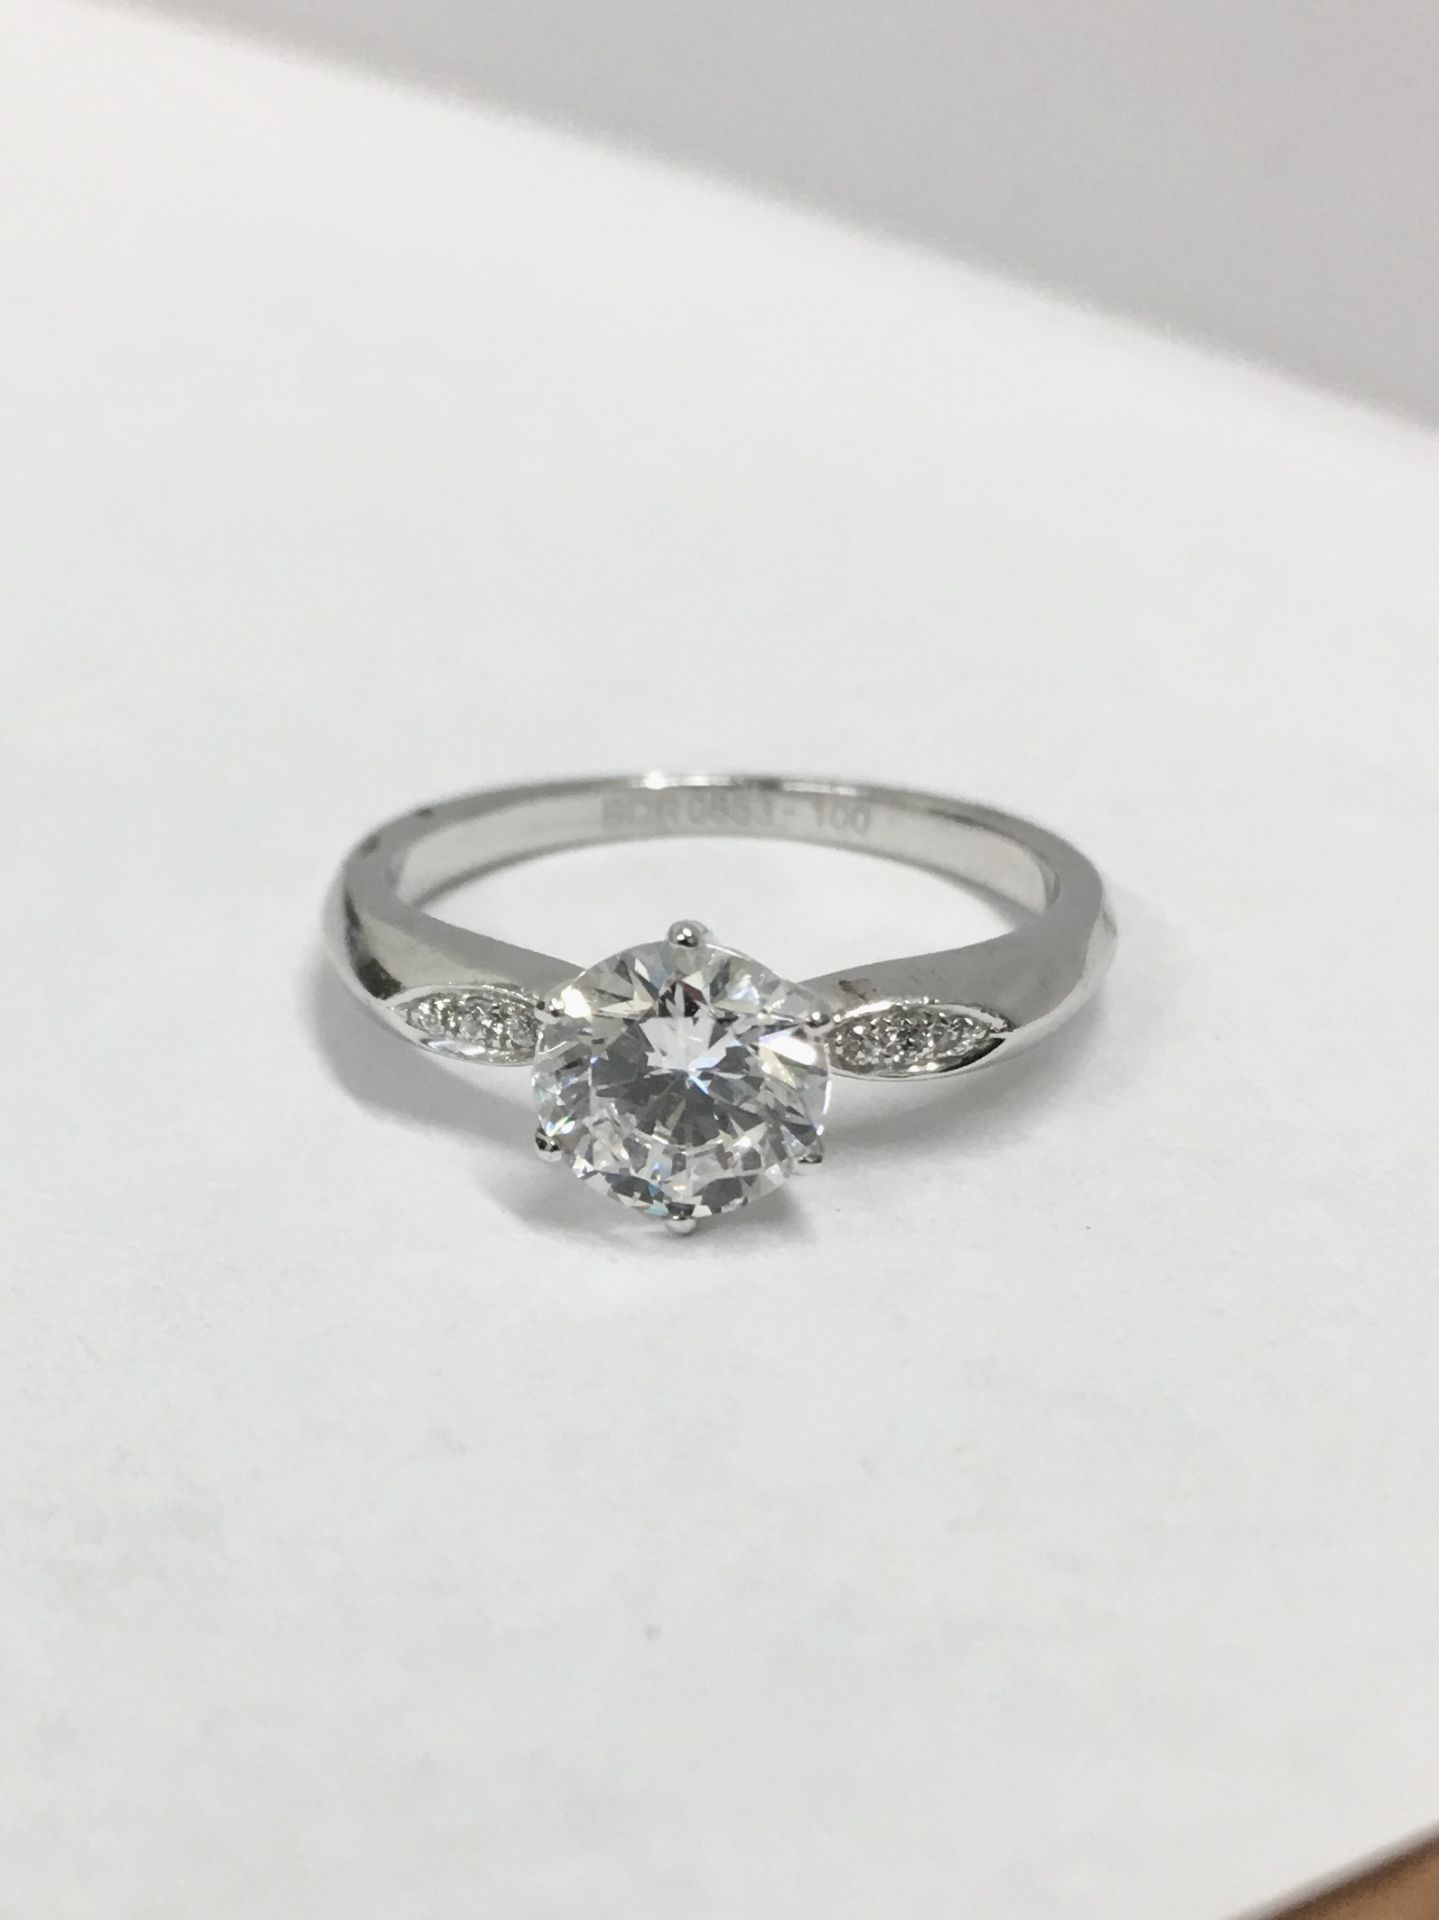 Platinum diamond solitaire ring,0.50ct brilliant cut diamond D colour vs clarity,platinum diamond